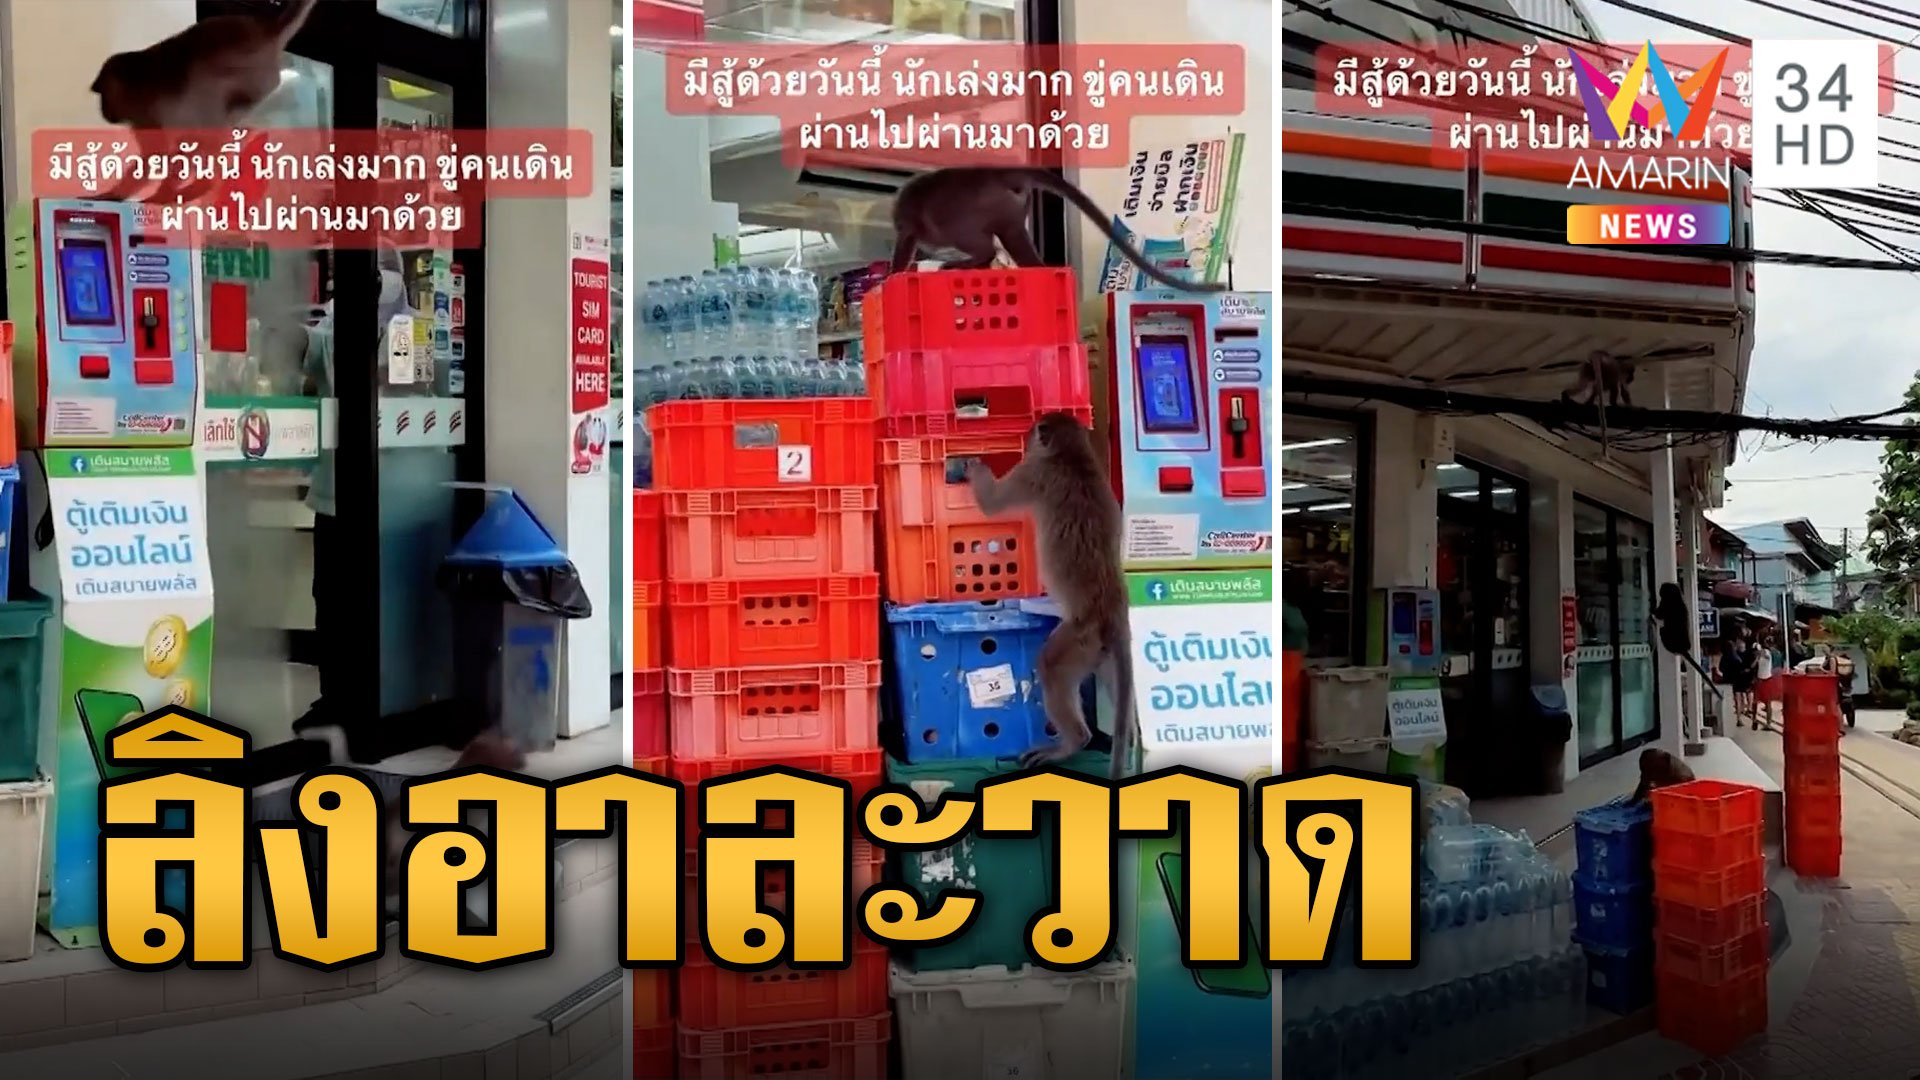 ไม่กลัวคน 'ฝูงลิงหิวโซ' บุกปล้นกล้วยหน้าร้านสะดวกซื้อ | ข่าวอรุณอมรินทร์ | 18 ก.ย. 66 | AMARIN TVHD34